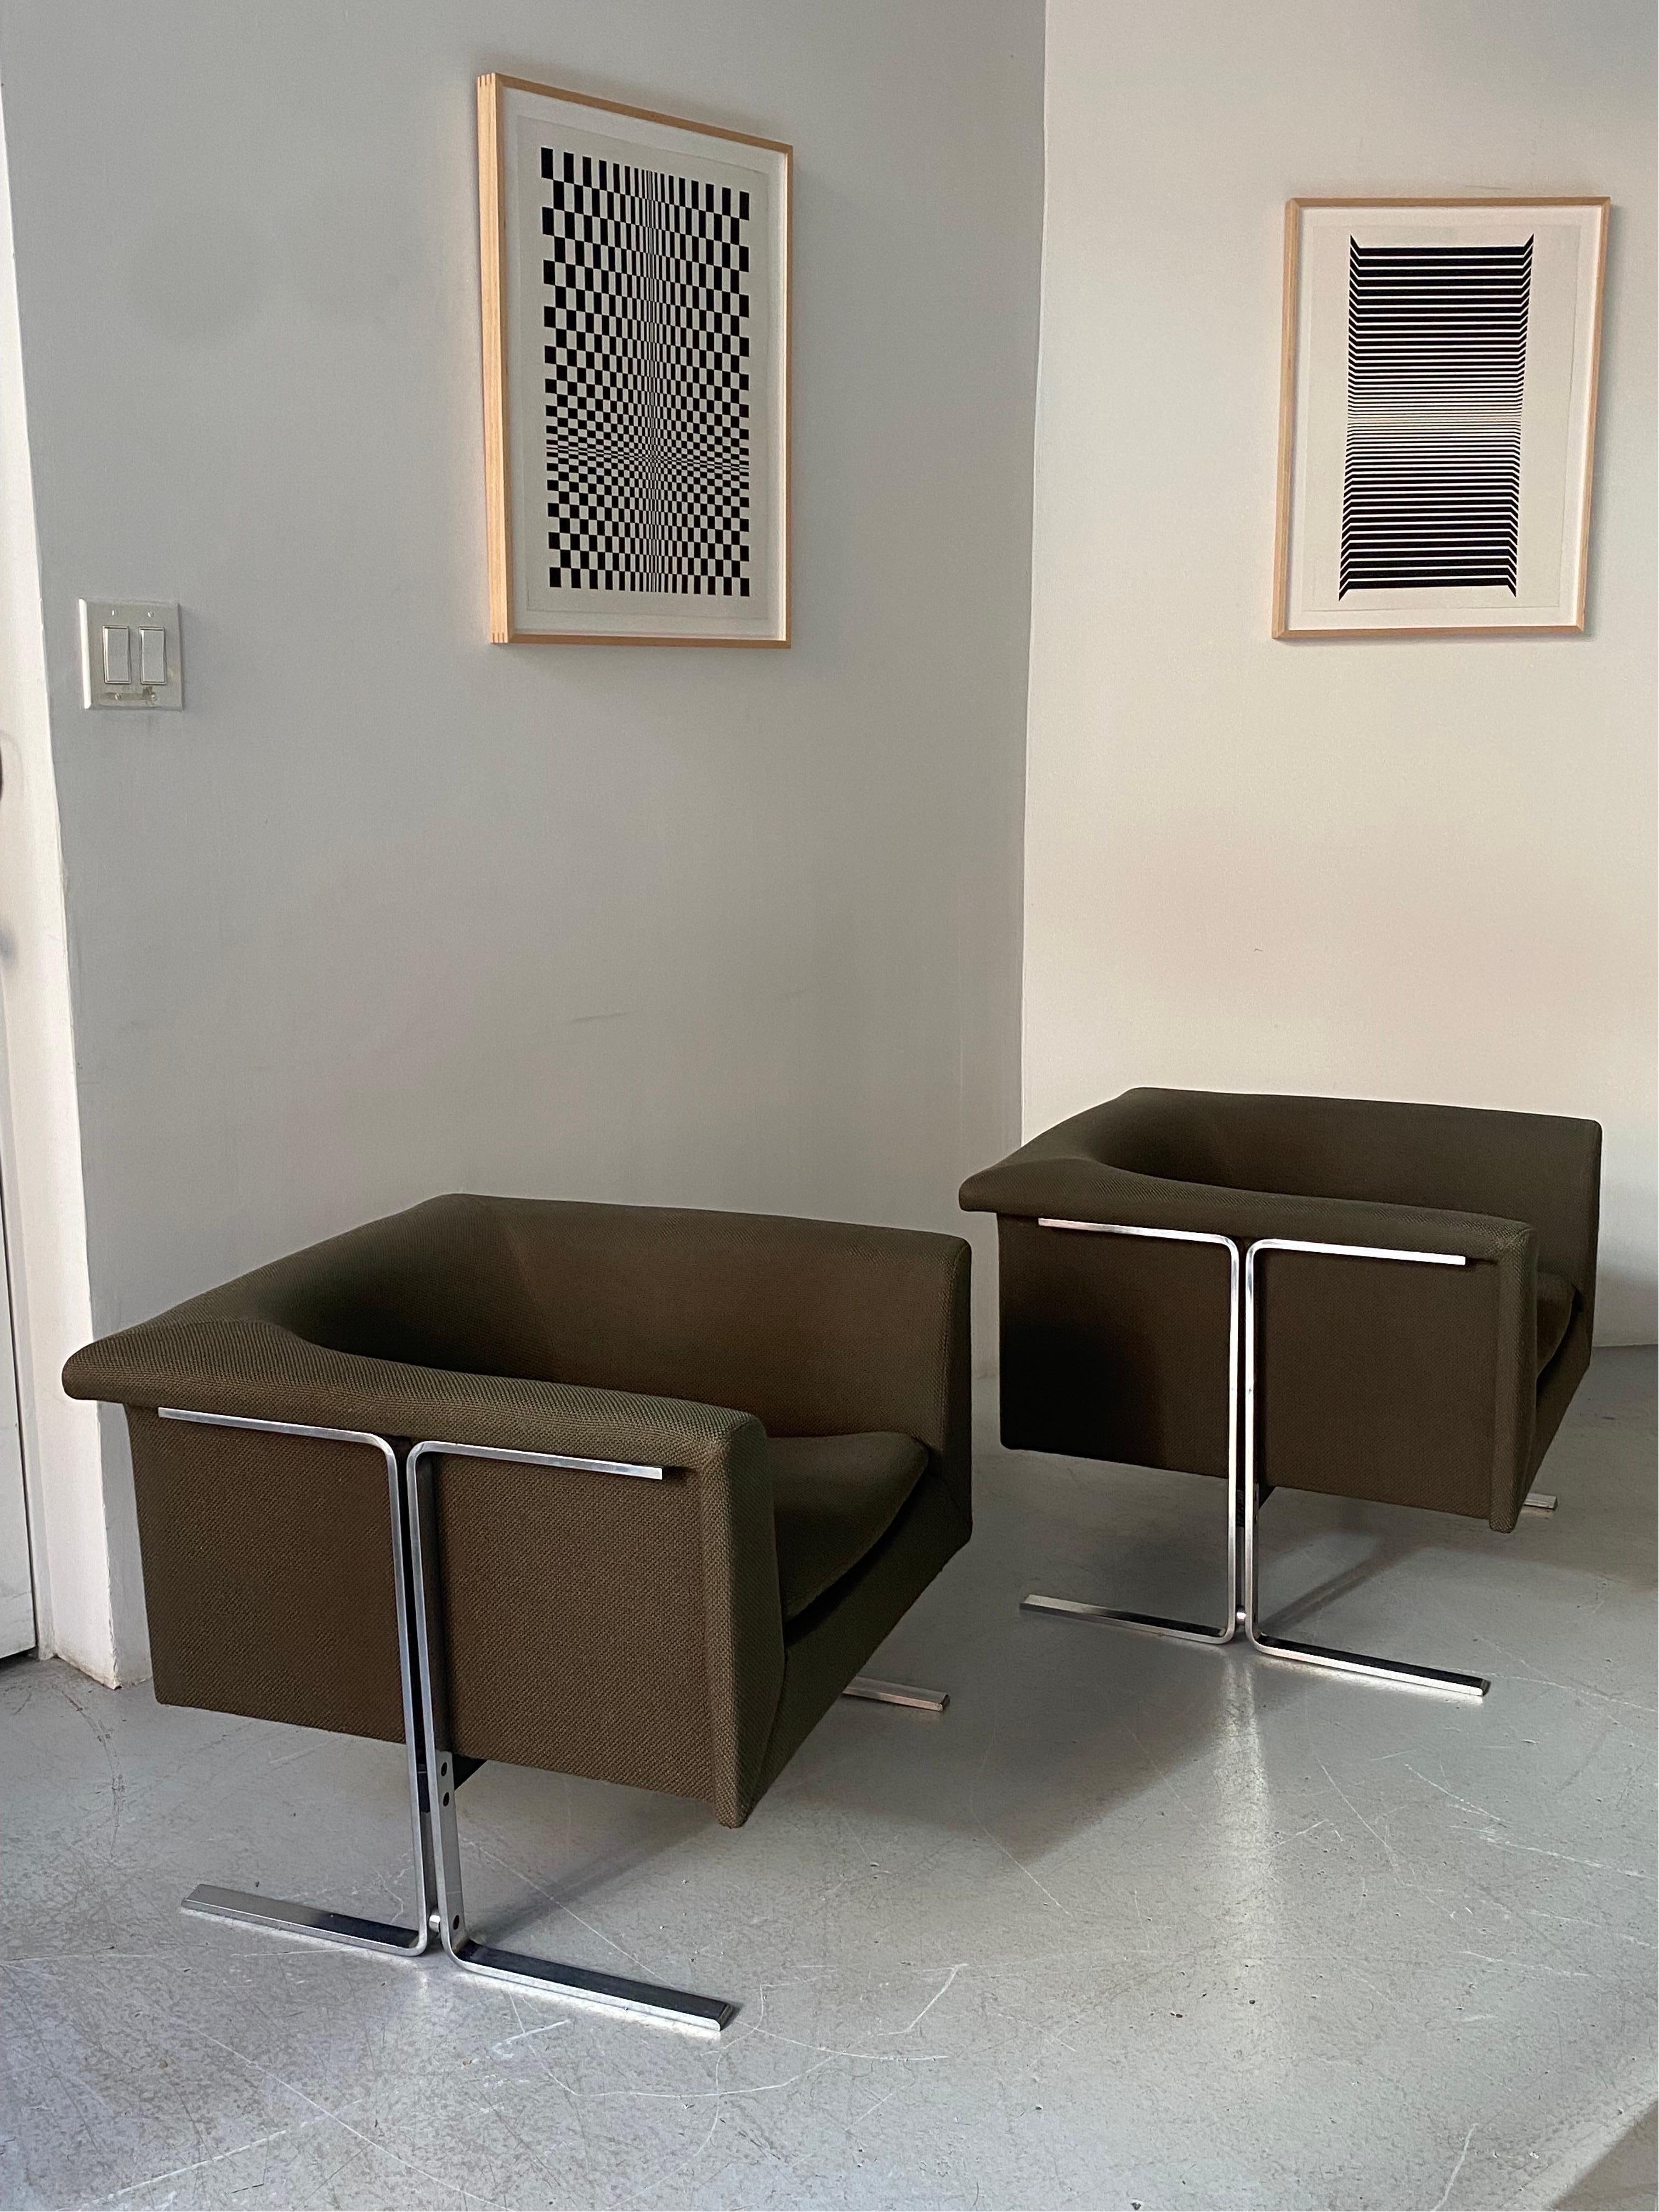 Tolles Paar Sessel von Geoffrey Harcourt für Artifort, Modell 042.
Die olivgrüne Originalpolsterung ist in ausgezeichnetem Zustand, ebenso wie die Stahlrahmen. Beide sind unten gelabelt.
Großartige Linien und Komfort.
Wenn Sie die Stühle in der